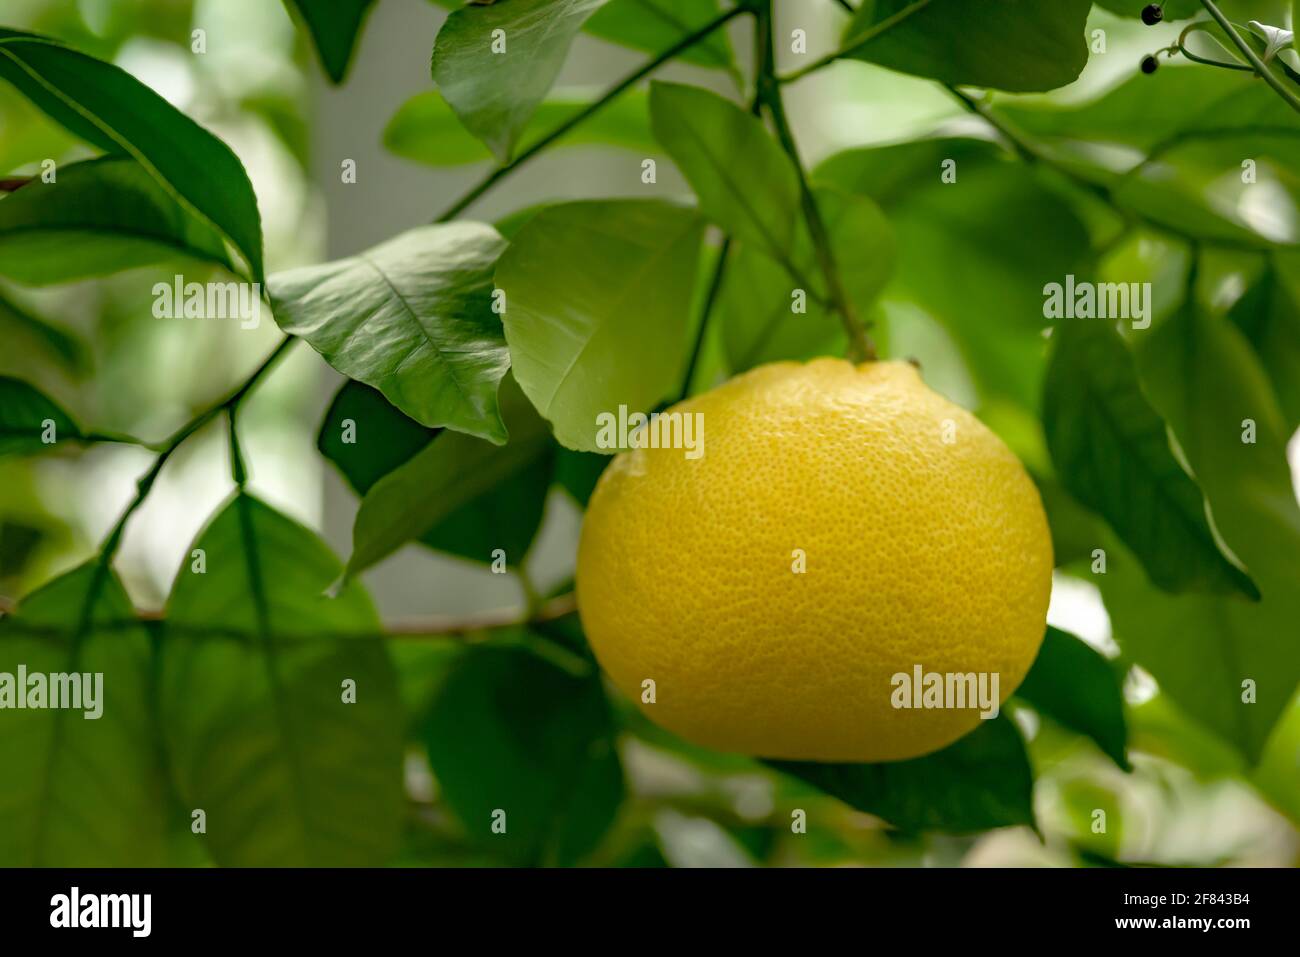 Large lemon on a lemon tree branch in the botanical garden. Stock Photo